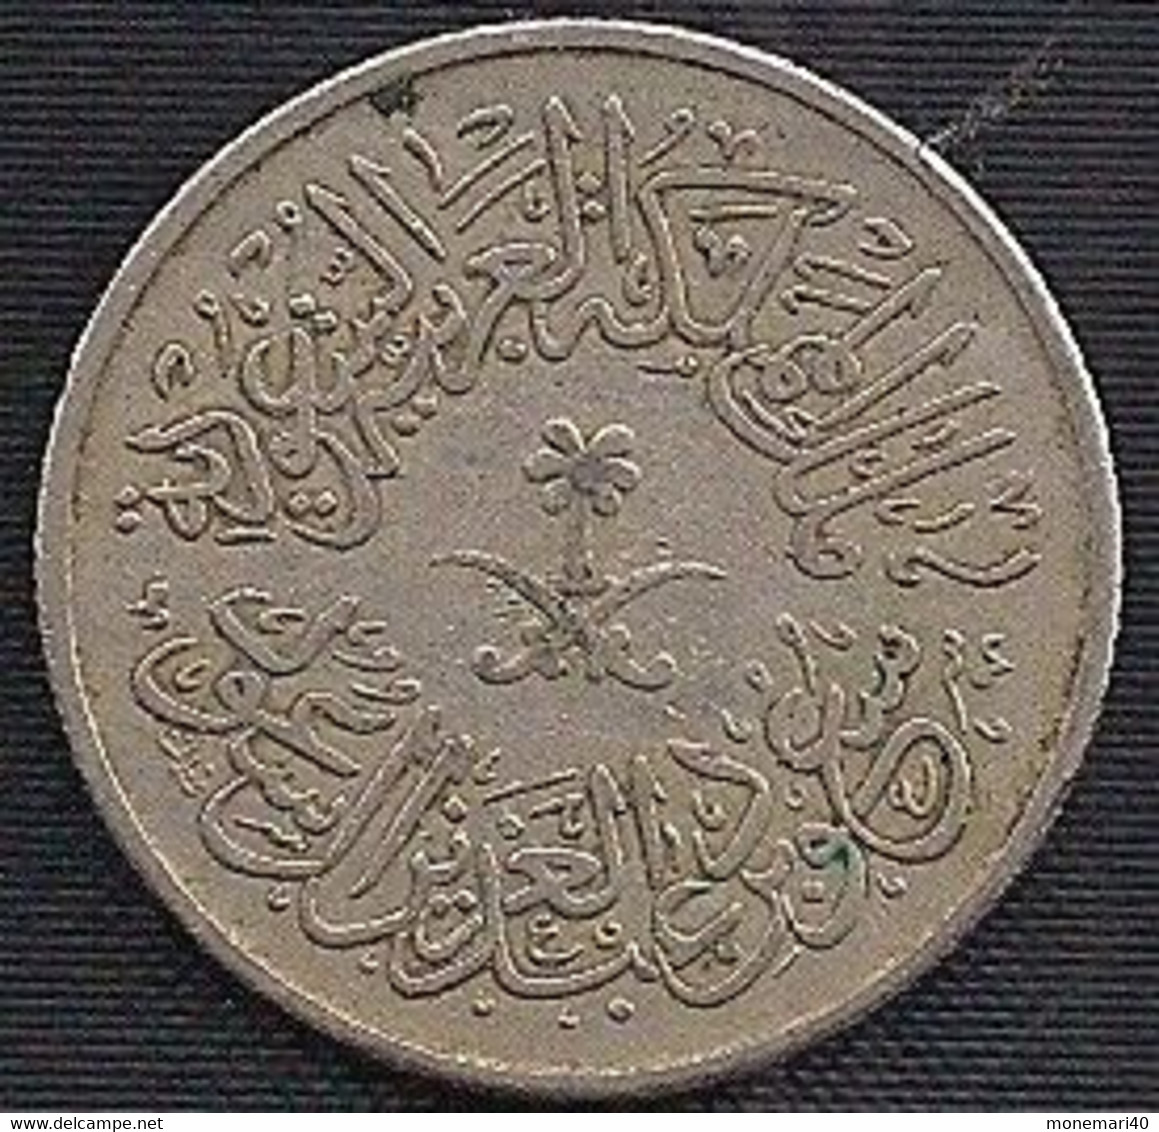 ARABIE SAOUDITE 1 GHIRSH - 1958 - Saudi Arabia